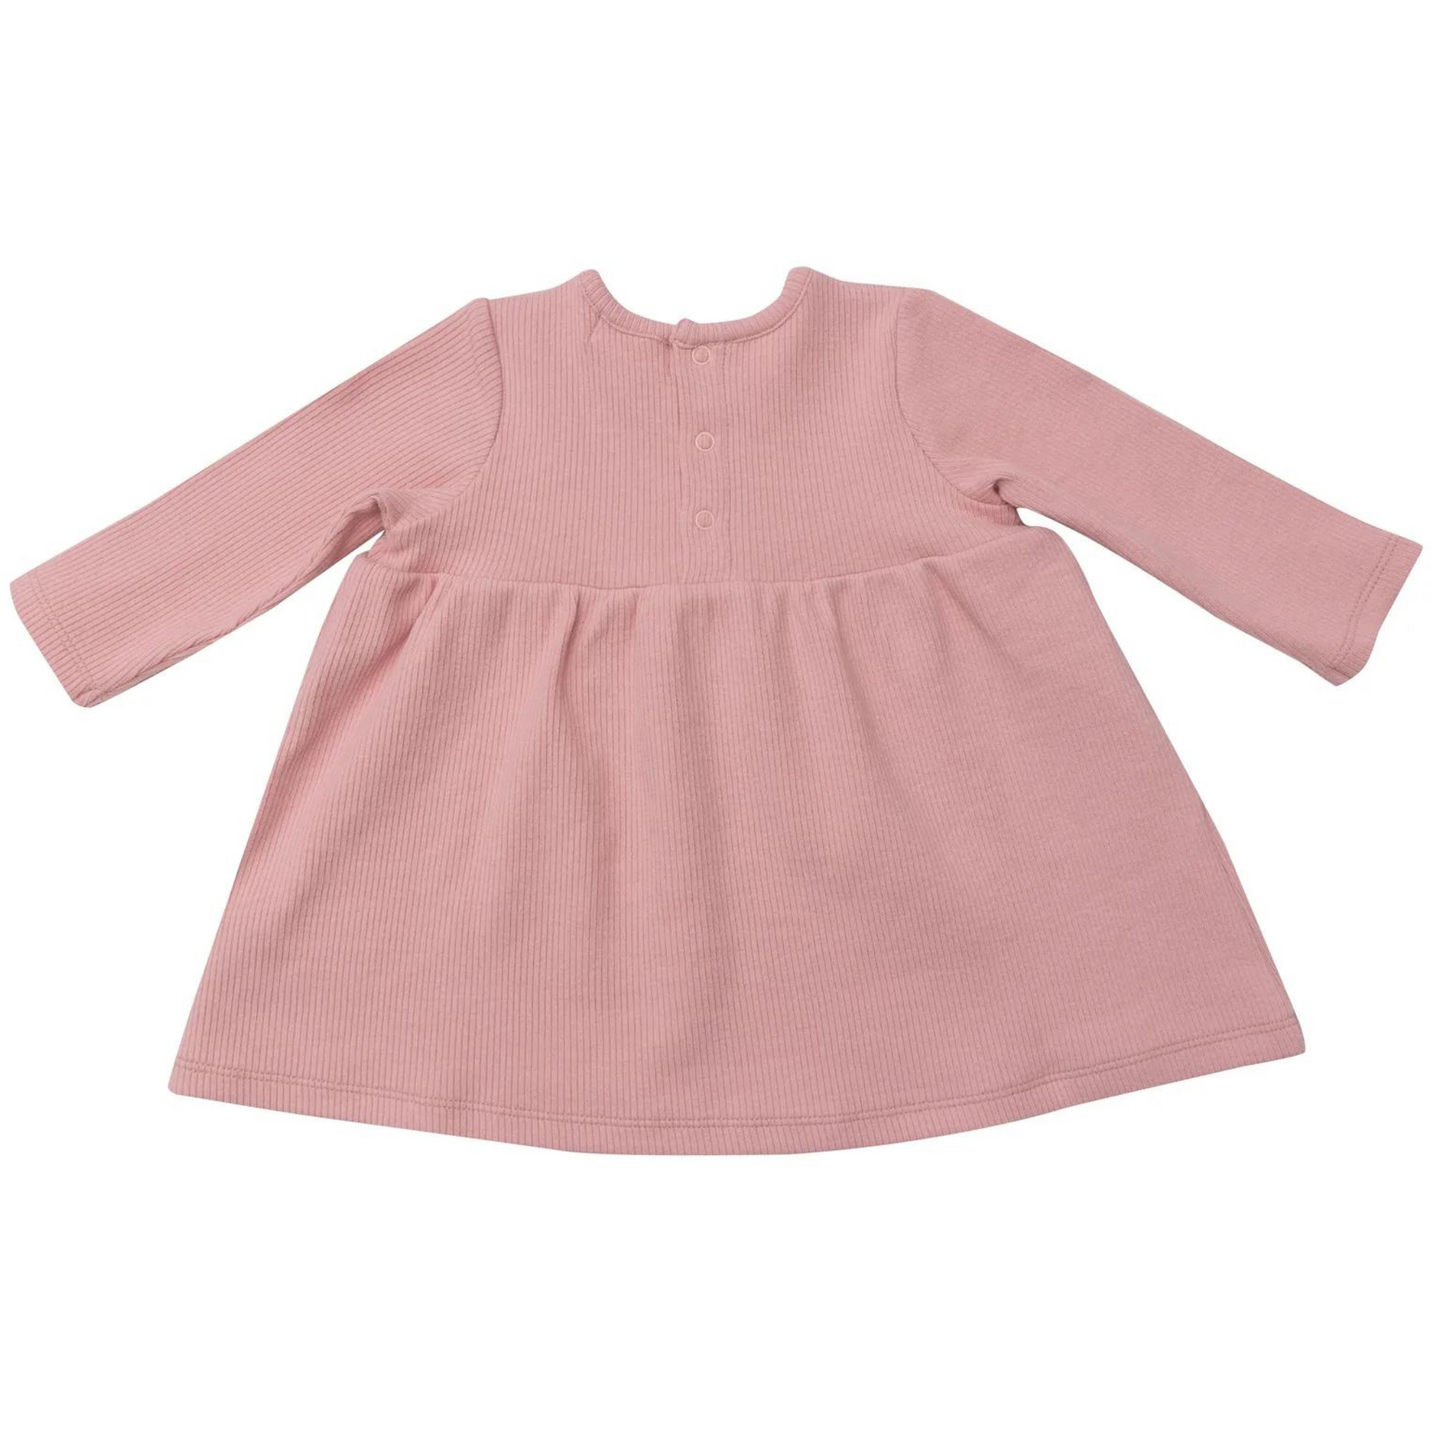 Simple Dress & Bloomer Set, Powder Pink